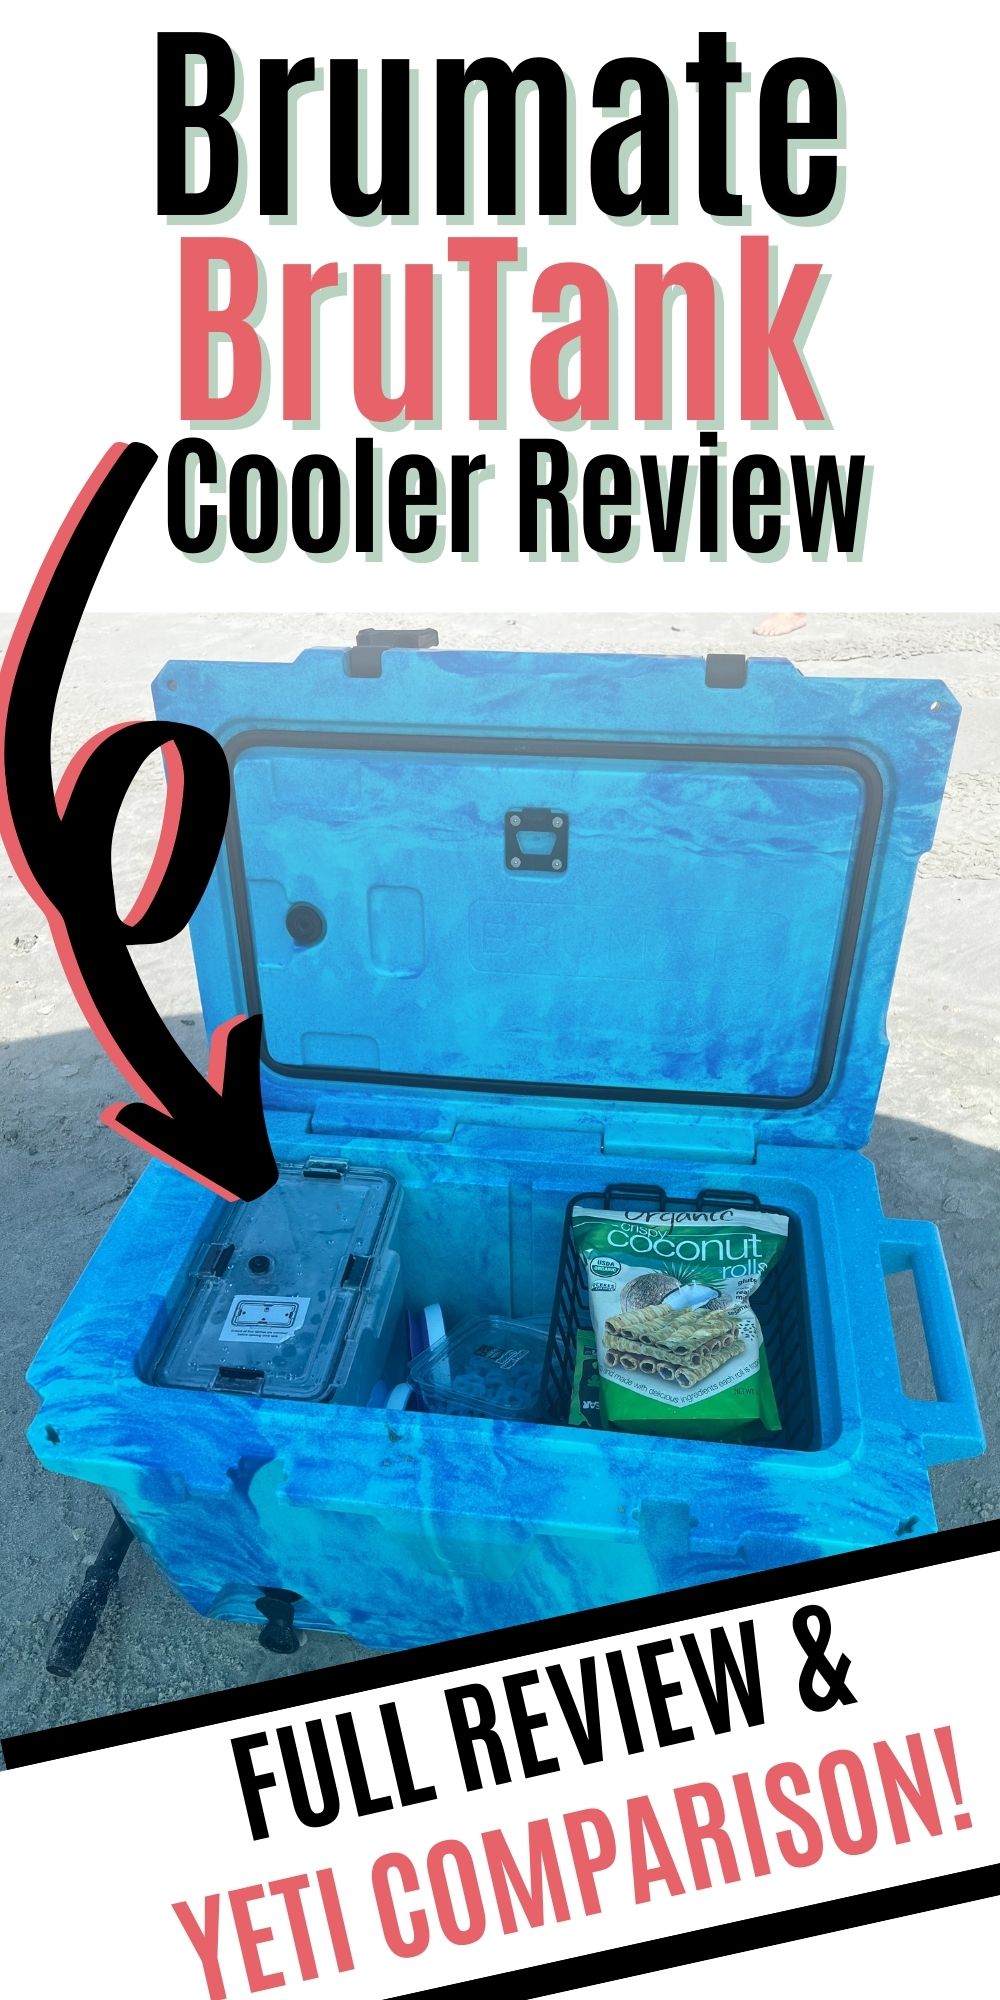 Brumate Bru-Tank Cooler Review 